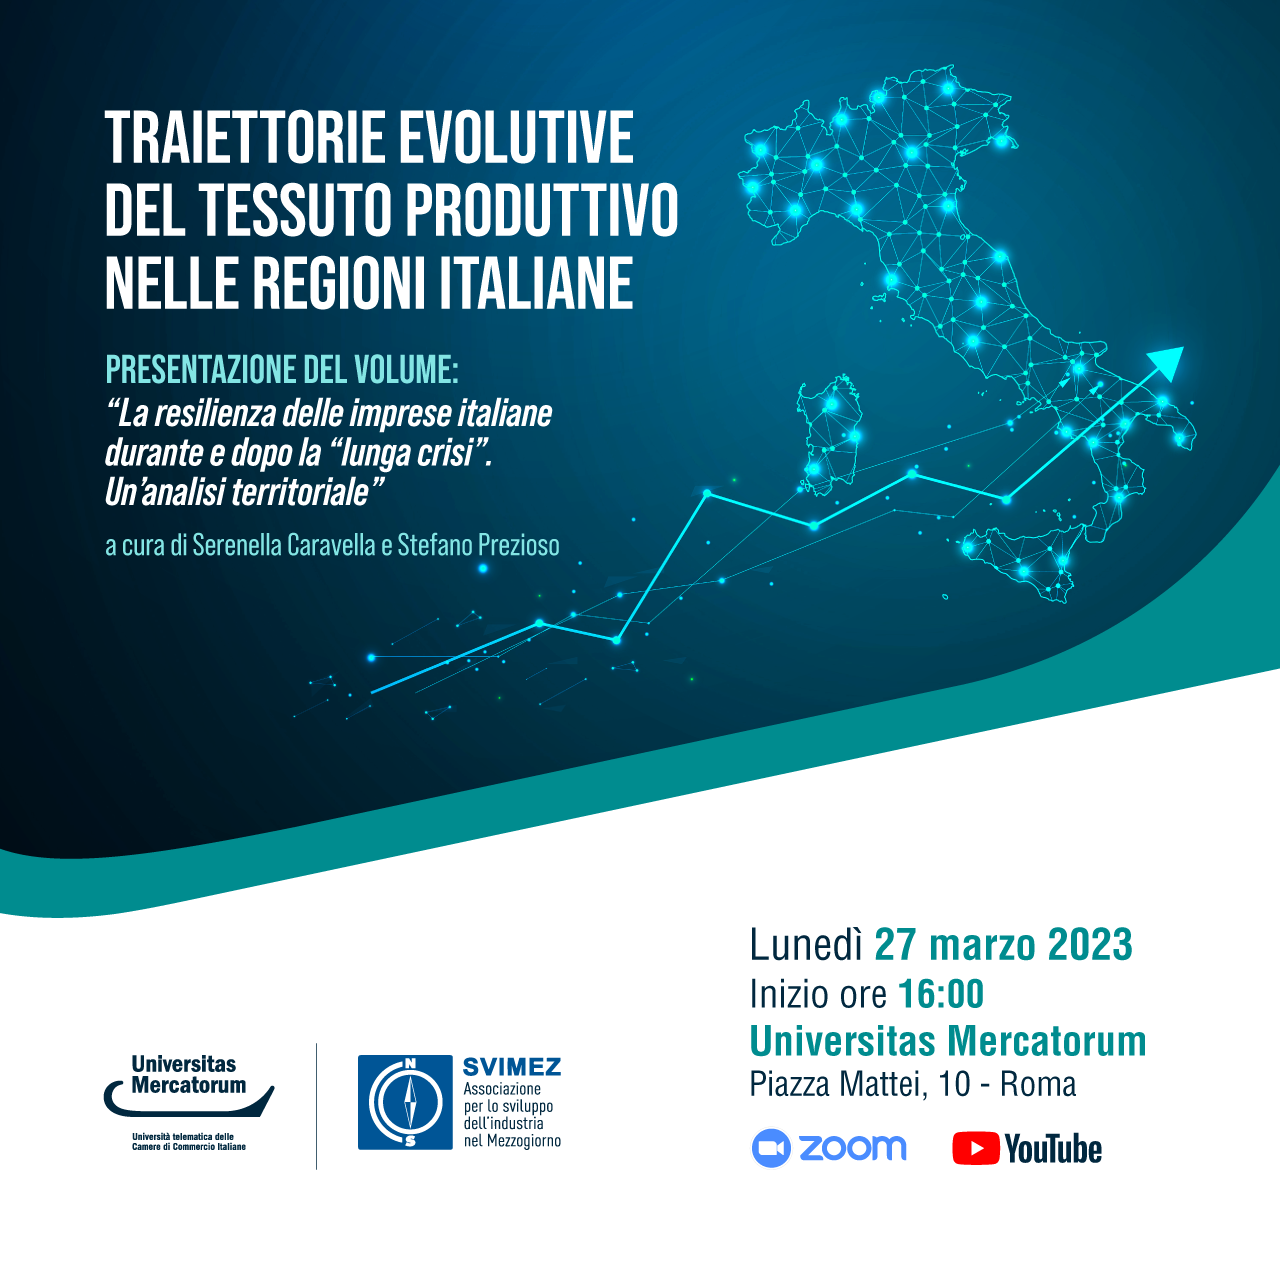 Presentazione del volume: "La resilienza delle imprese italiane, durante e dopo la lunga crisi. Un'analisi territoriale"